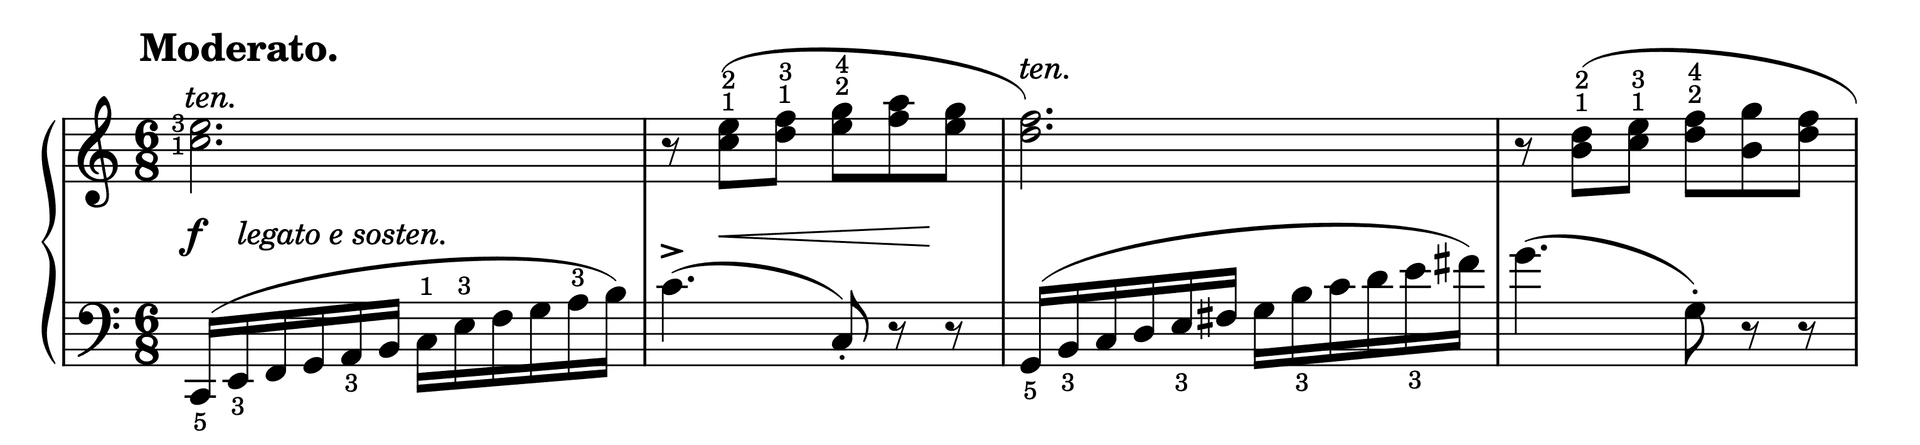 Excerpt of Etude in C Major Op. 37, No. 37